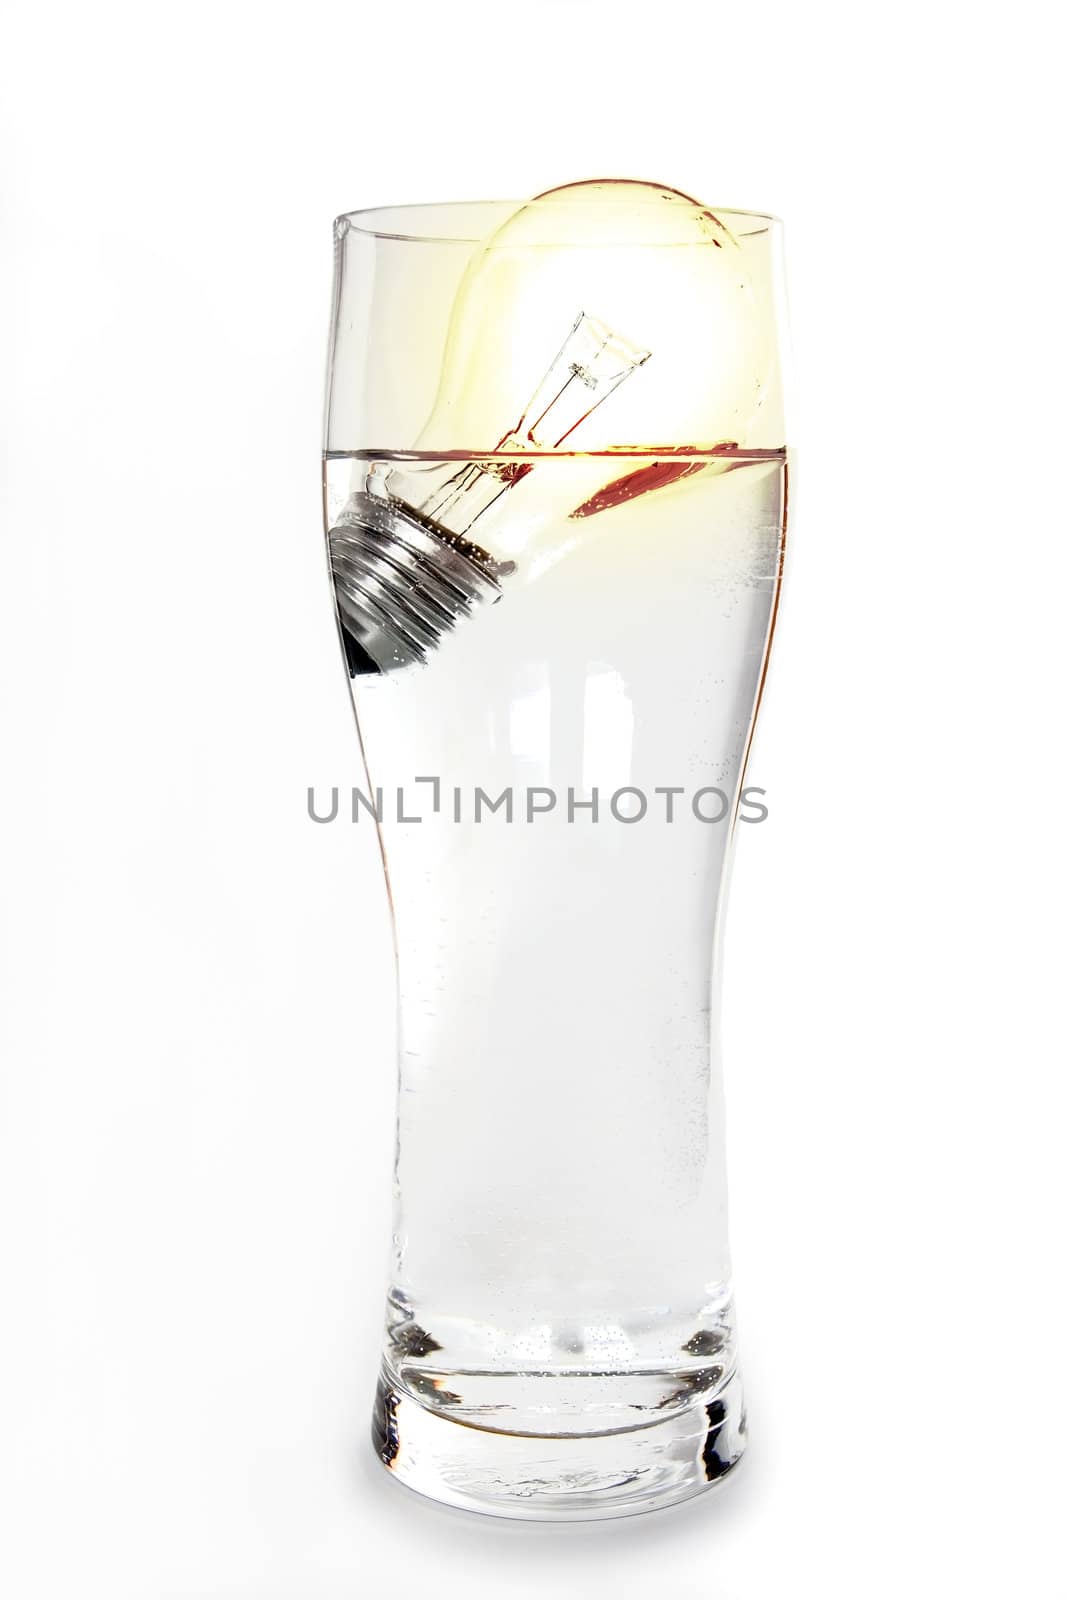 lightbulb in glass by milkovasa